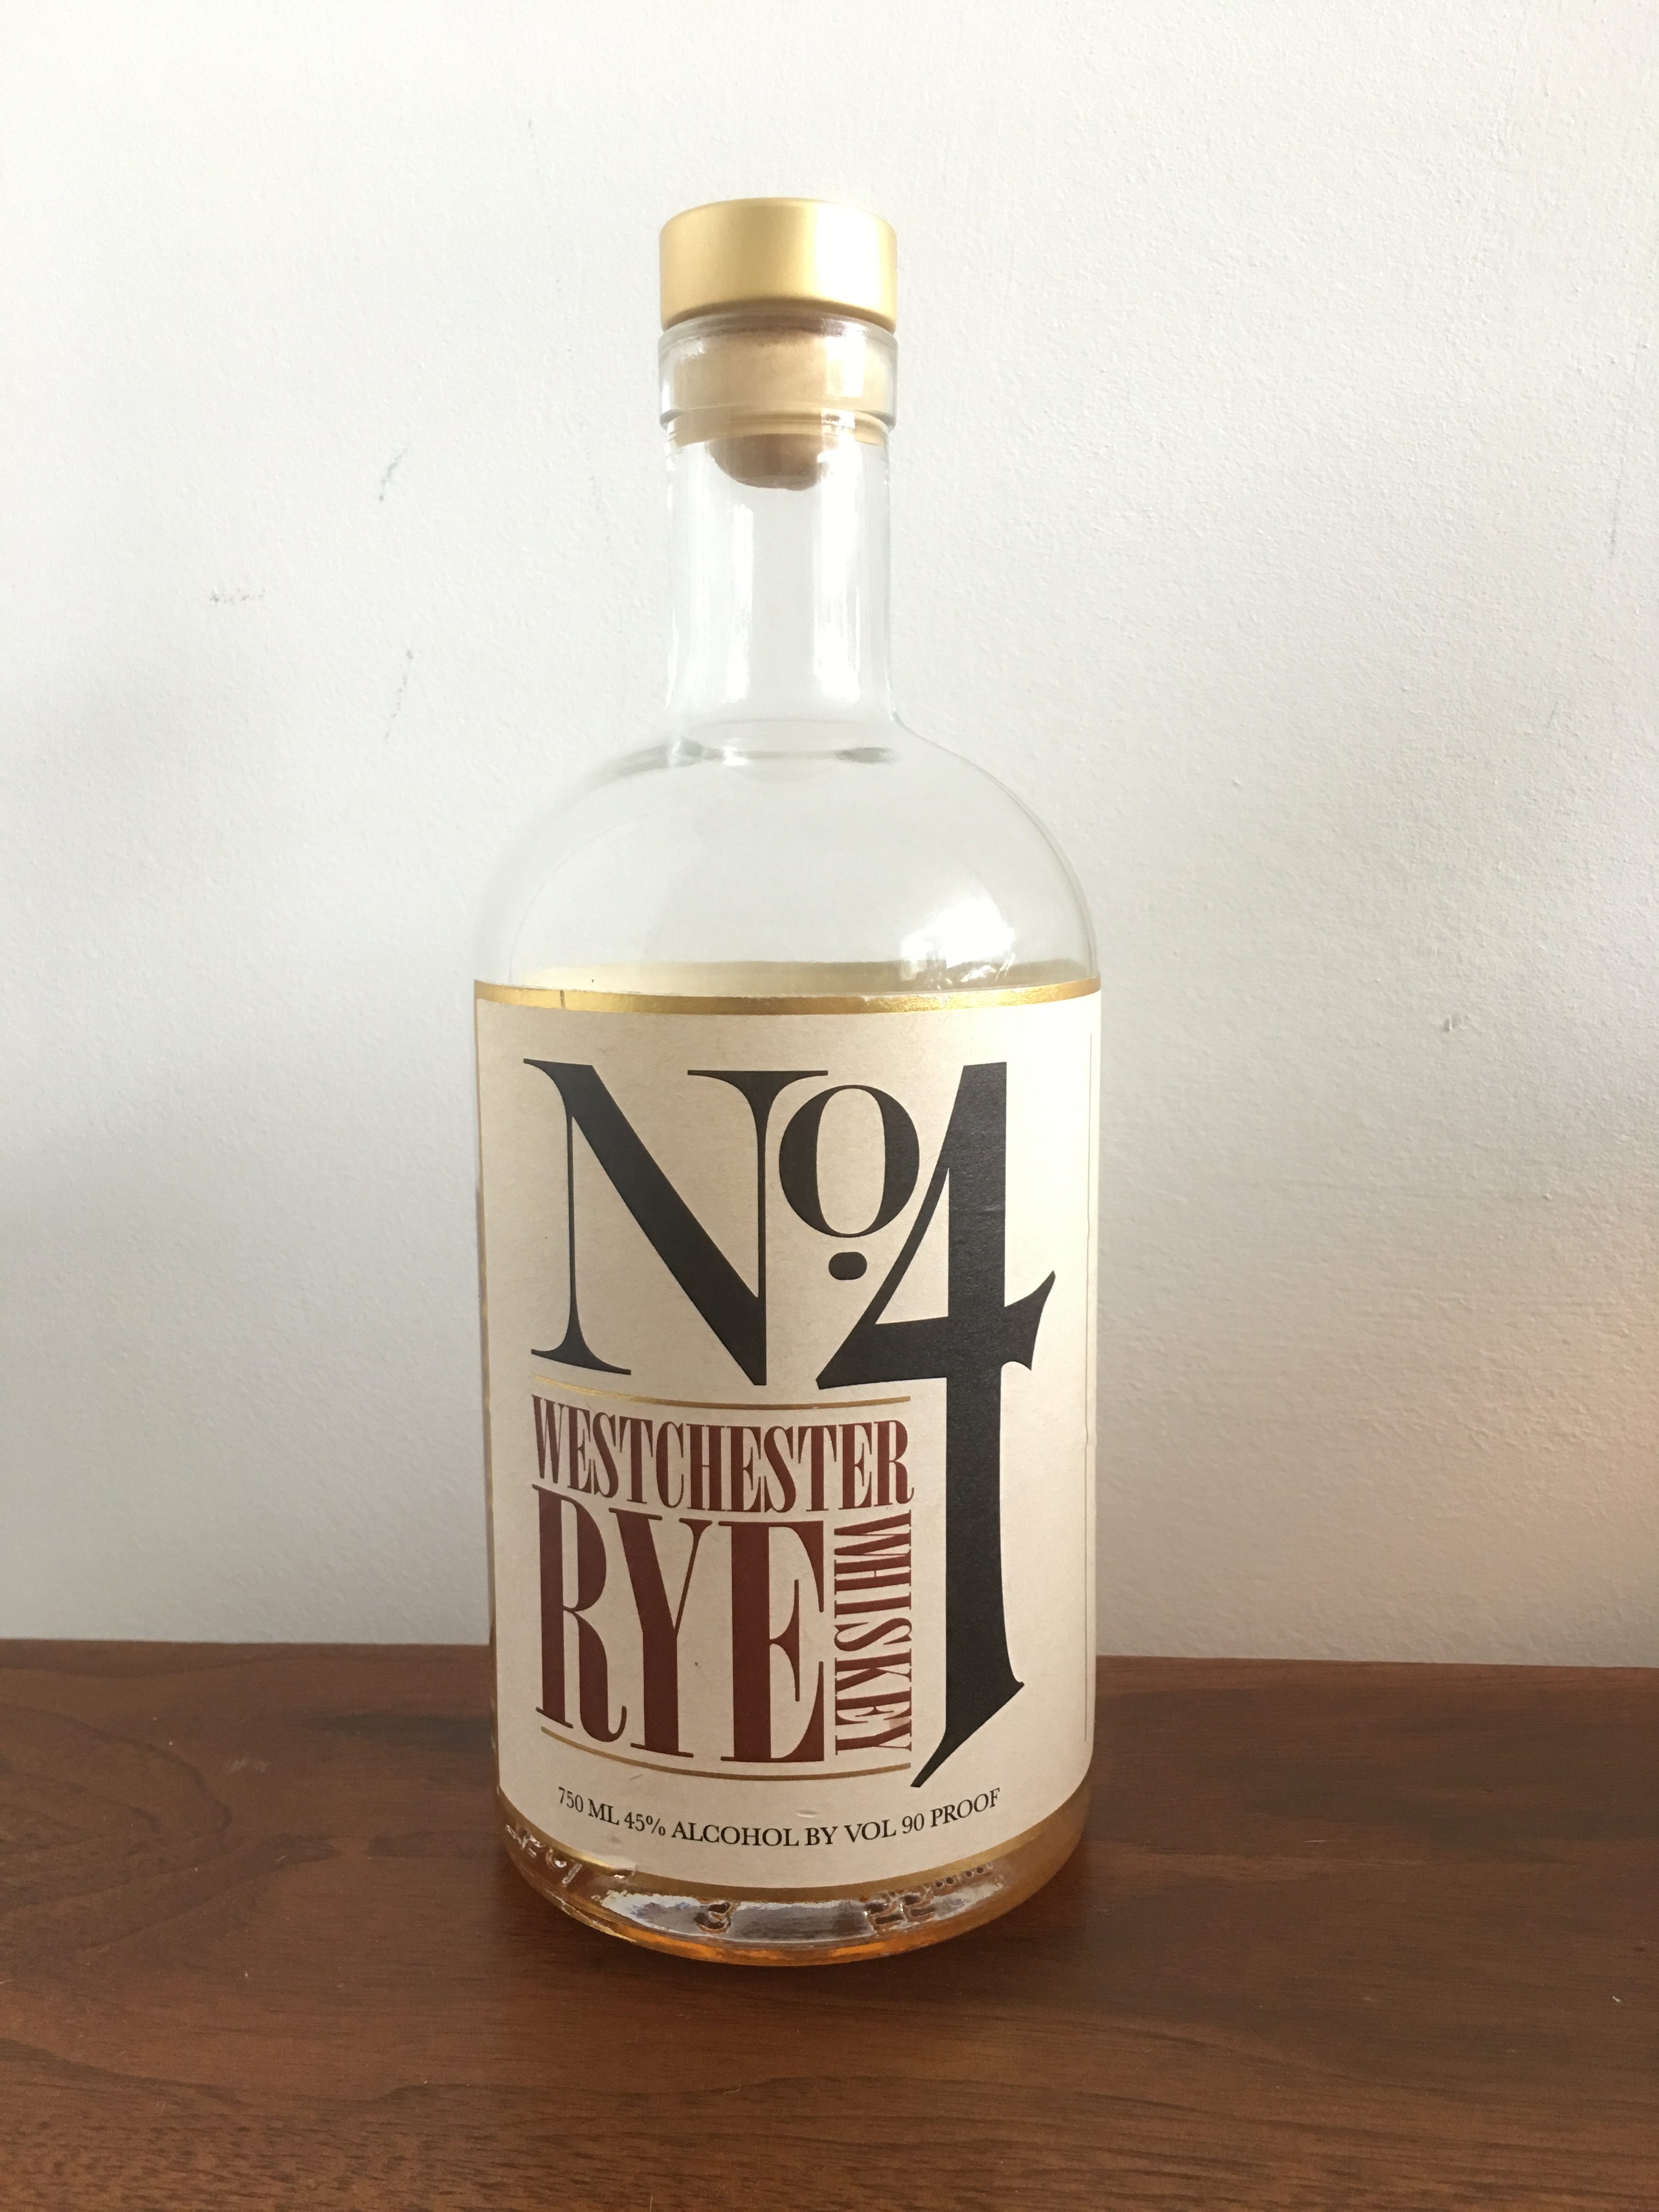 No. 4 Westchester Rye Whiskey